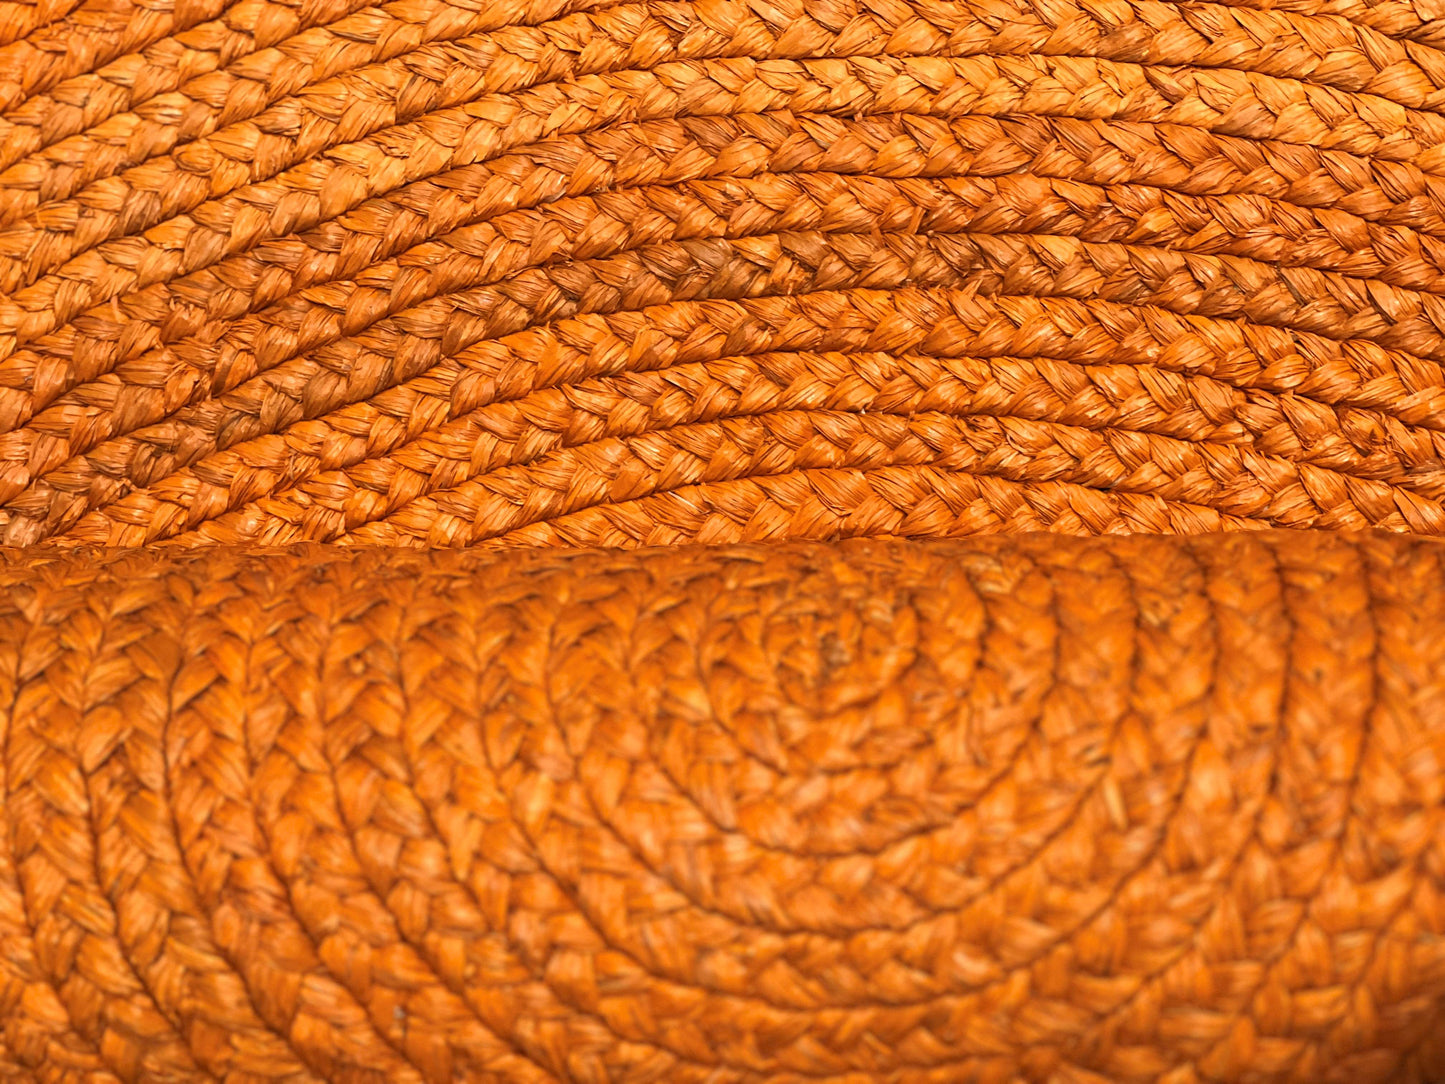 Tapis rond en raphia orange- Yvette- 190 cm Intimani Ethnique chic